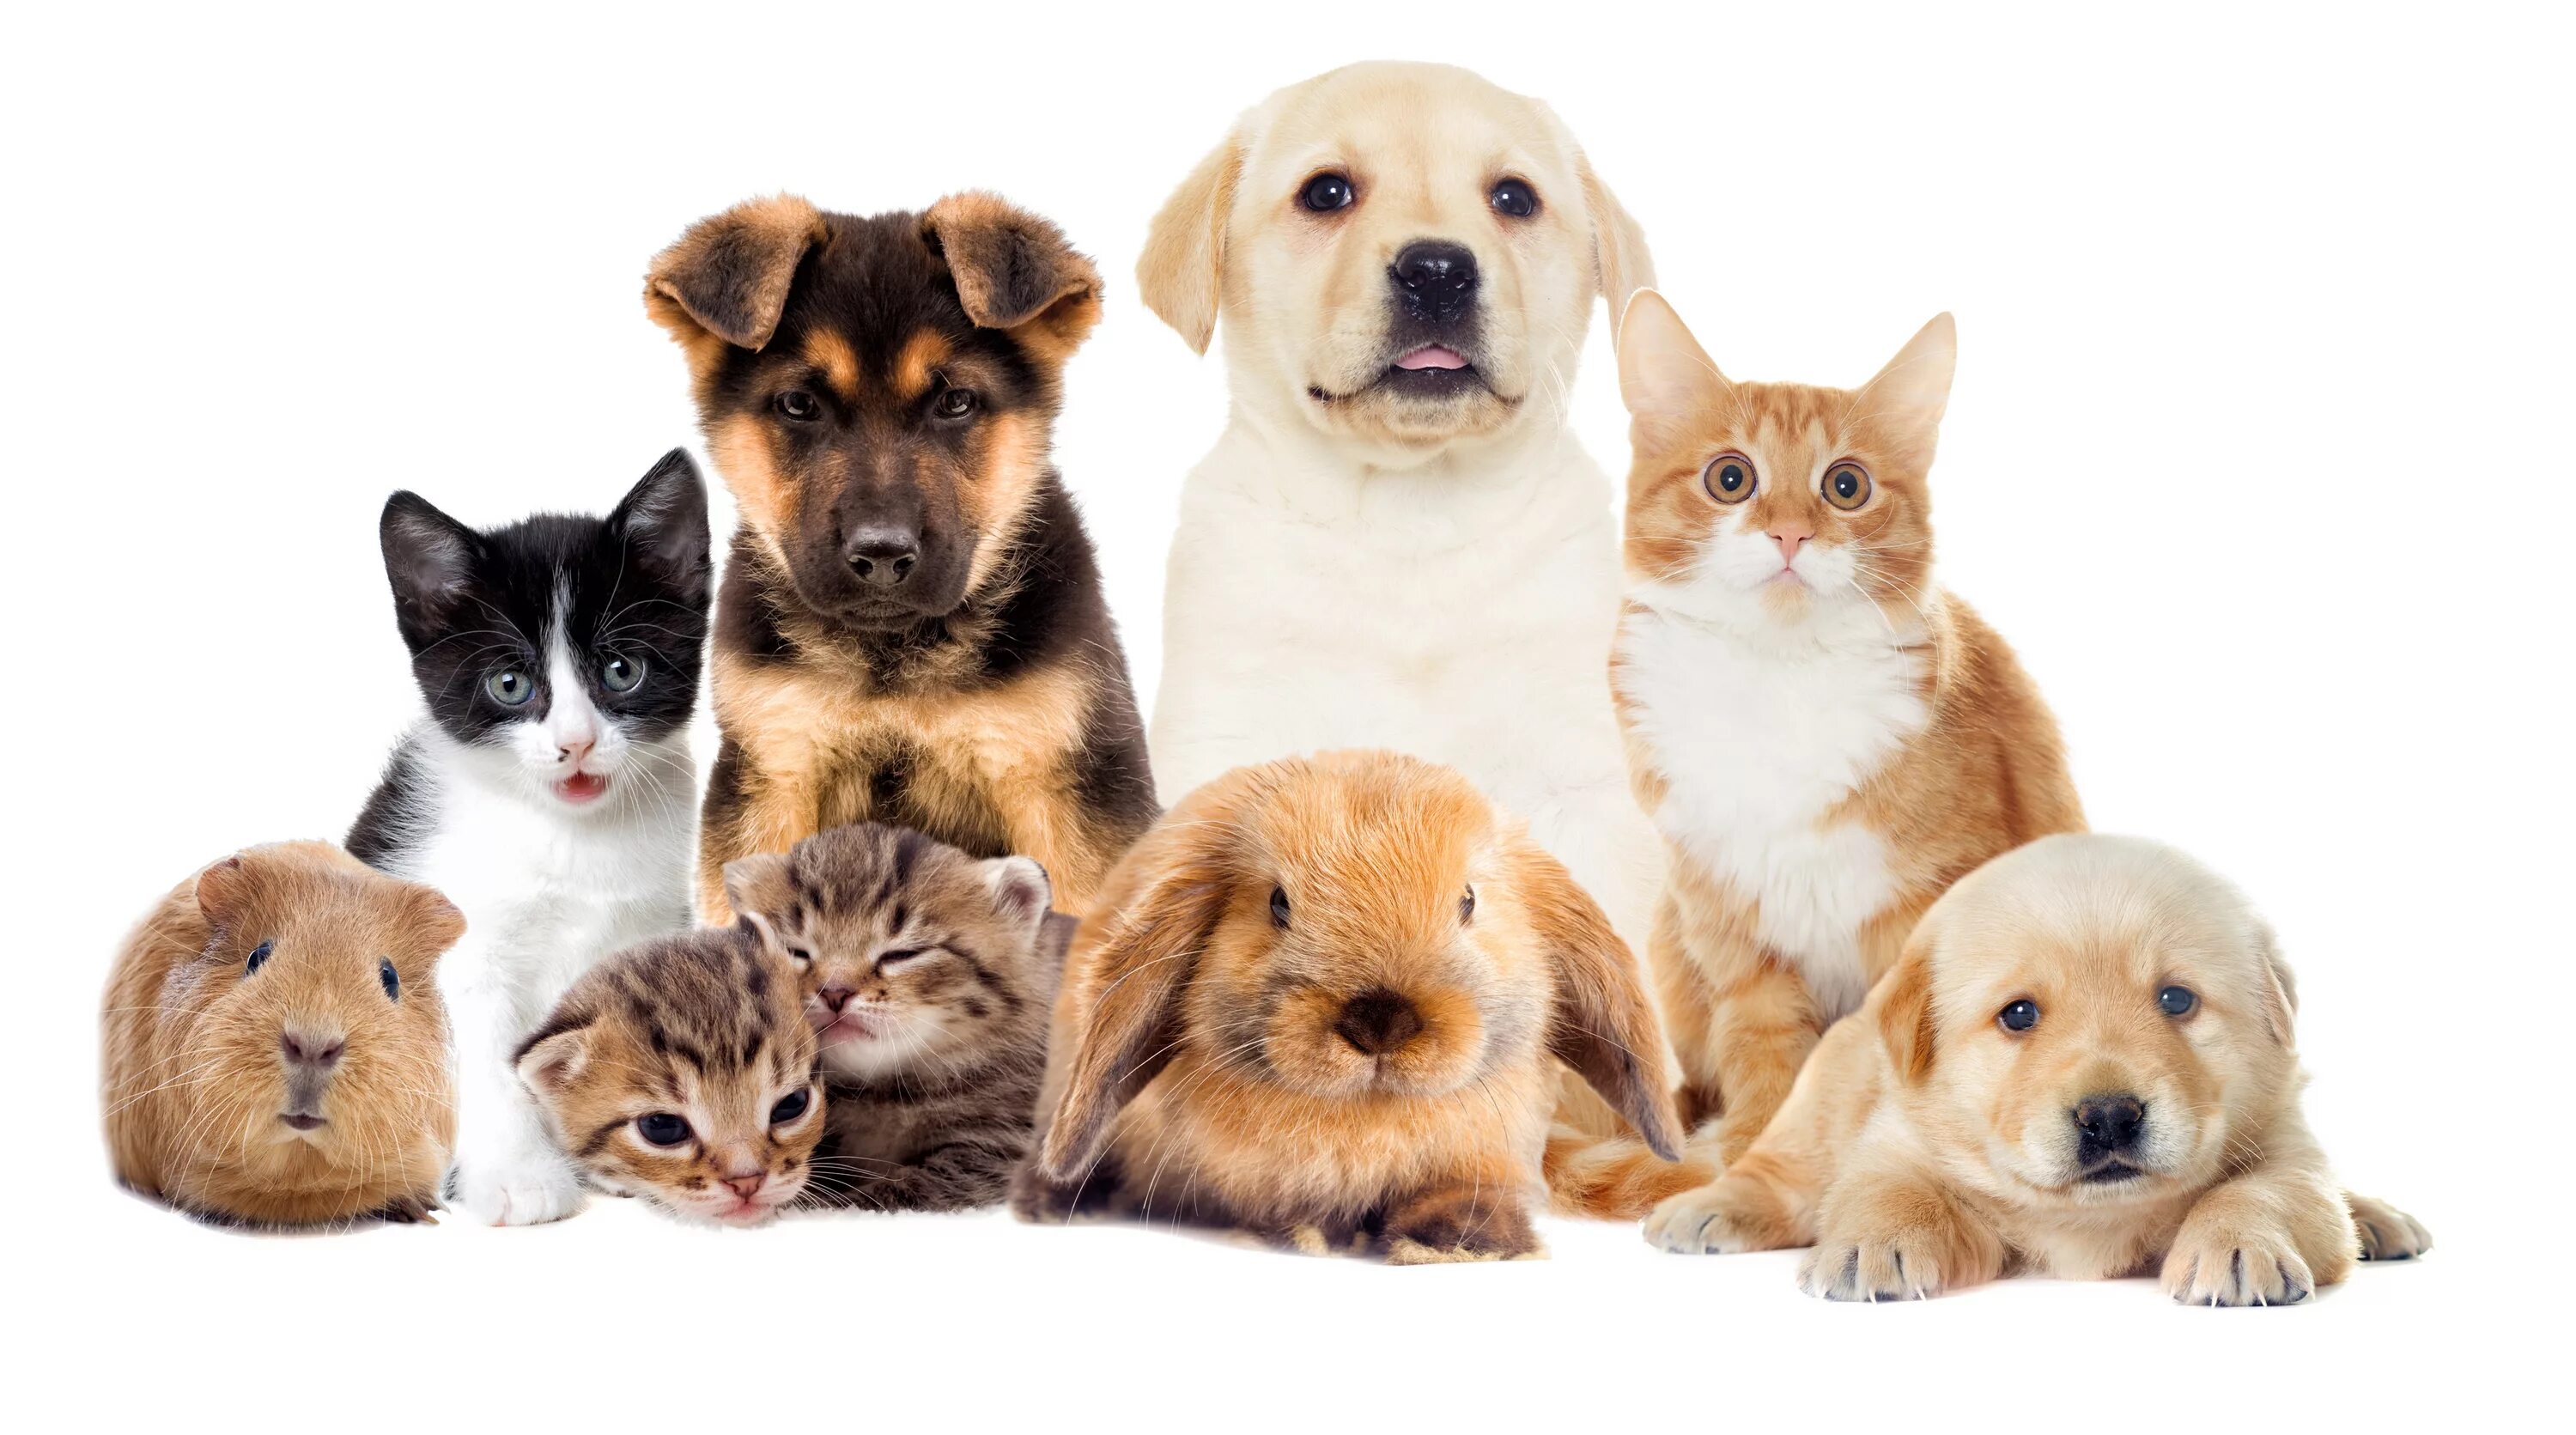 Kind pets. Домашние животные. Кошки и собаки. Много домашних животных. Домашние животные вместе.